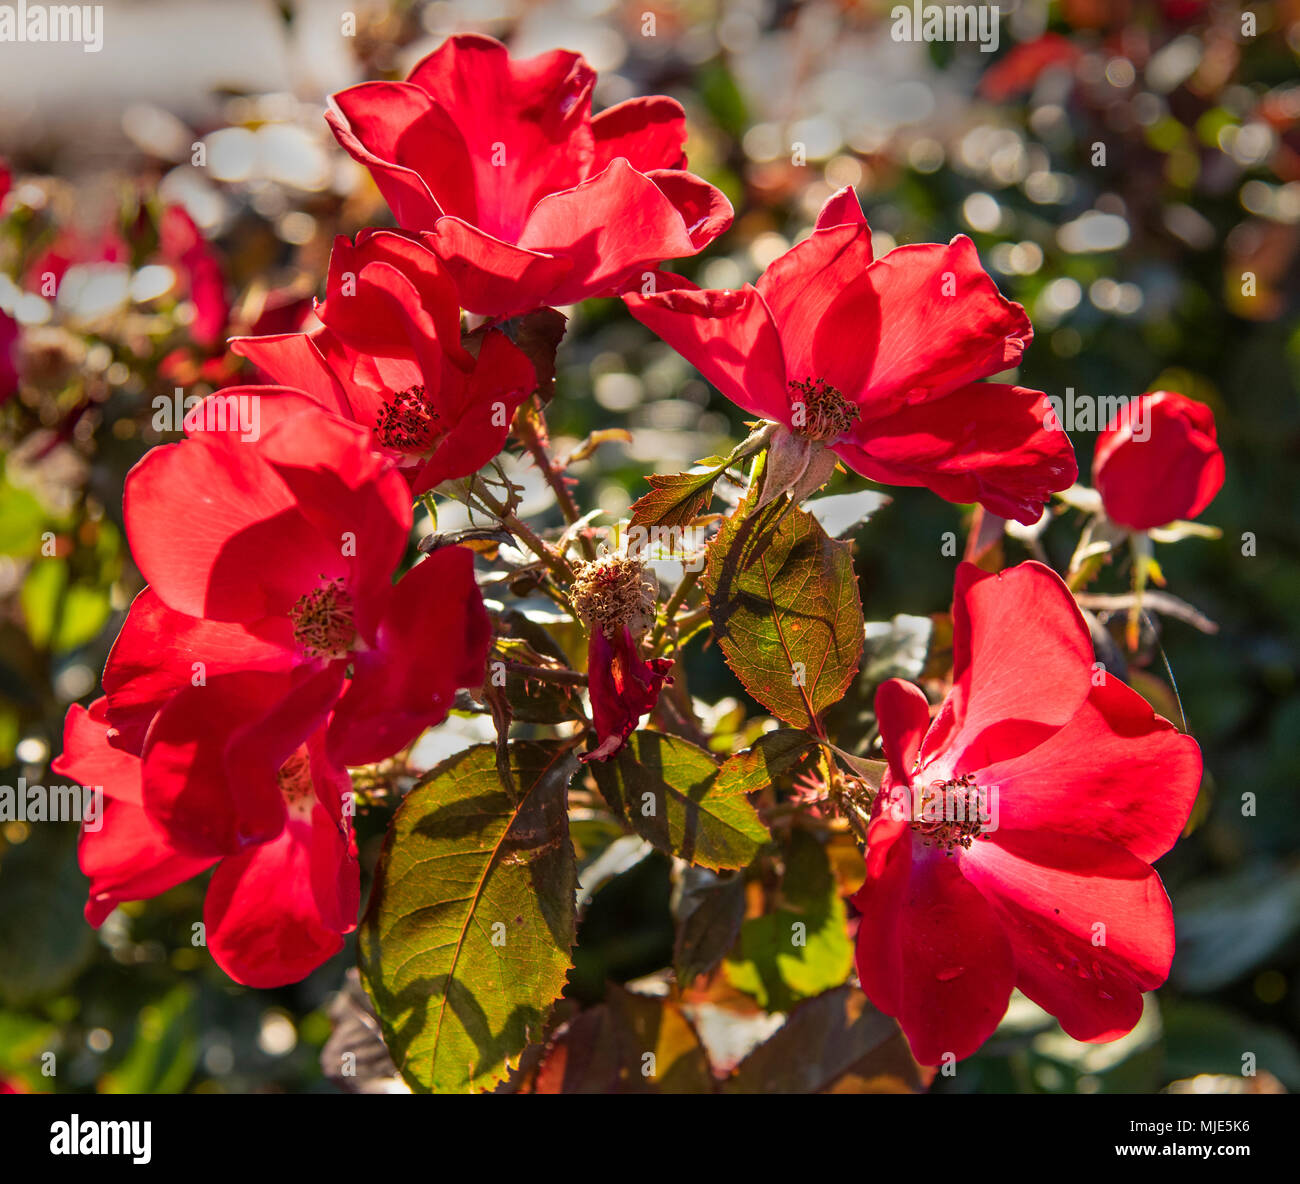 Knock Out radraz Rosen (Rosa) sind eine besonders robuste Sorte, bekannt als wartungsarme Rose, und daher sehr beliebt in der Landschaftsgestaltung. Stockfoto